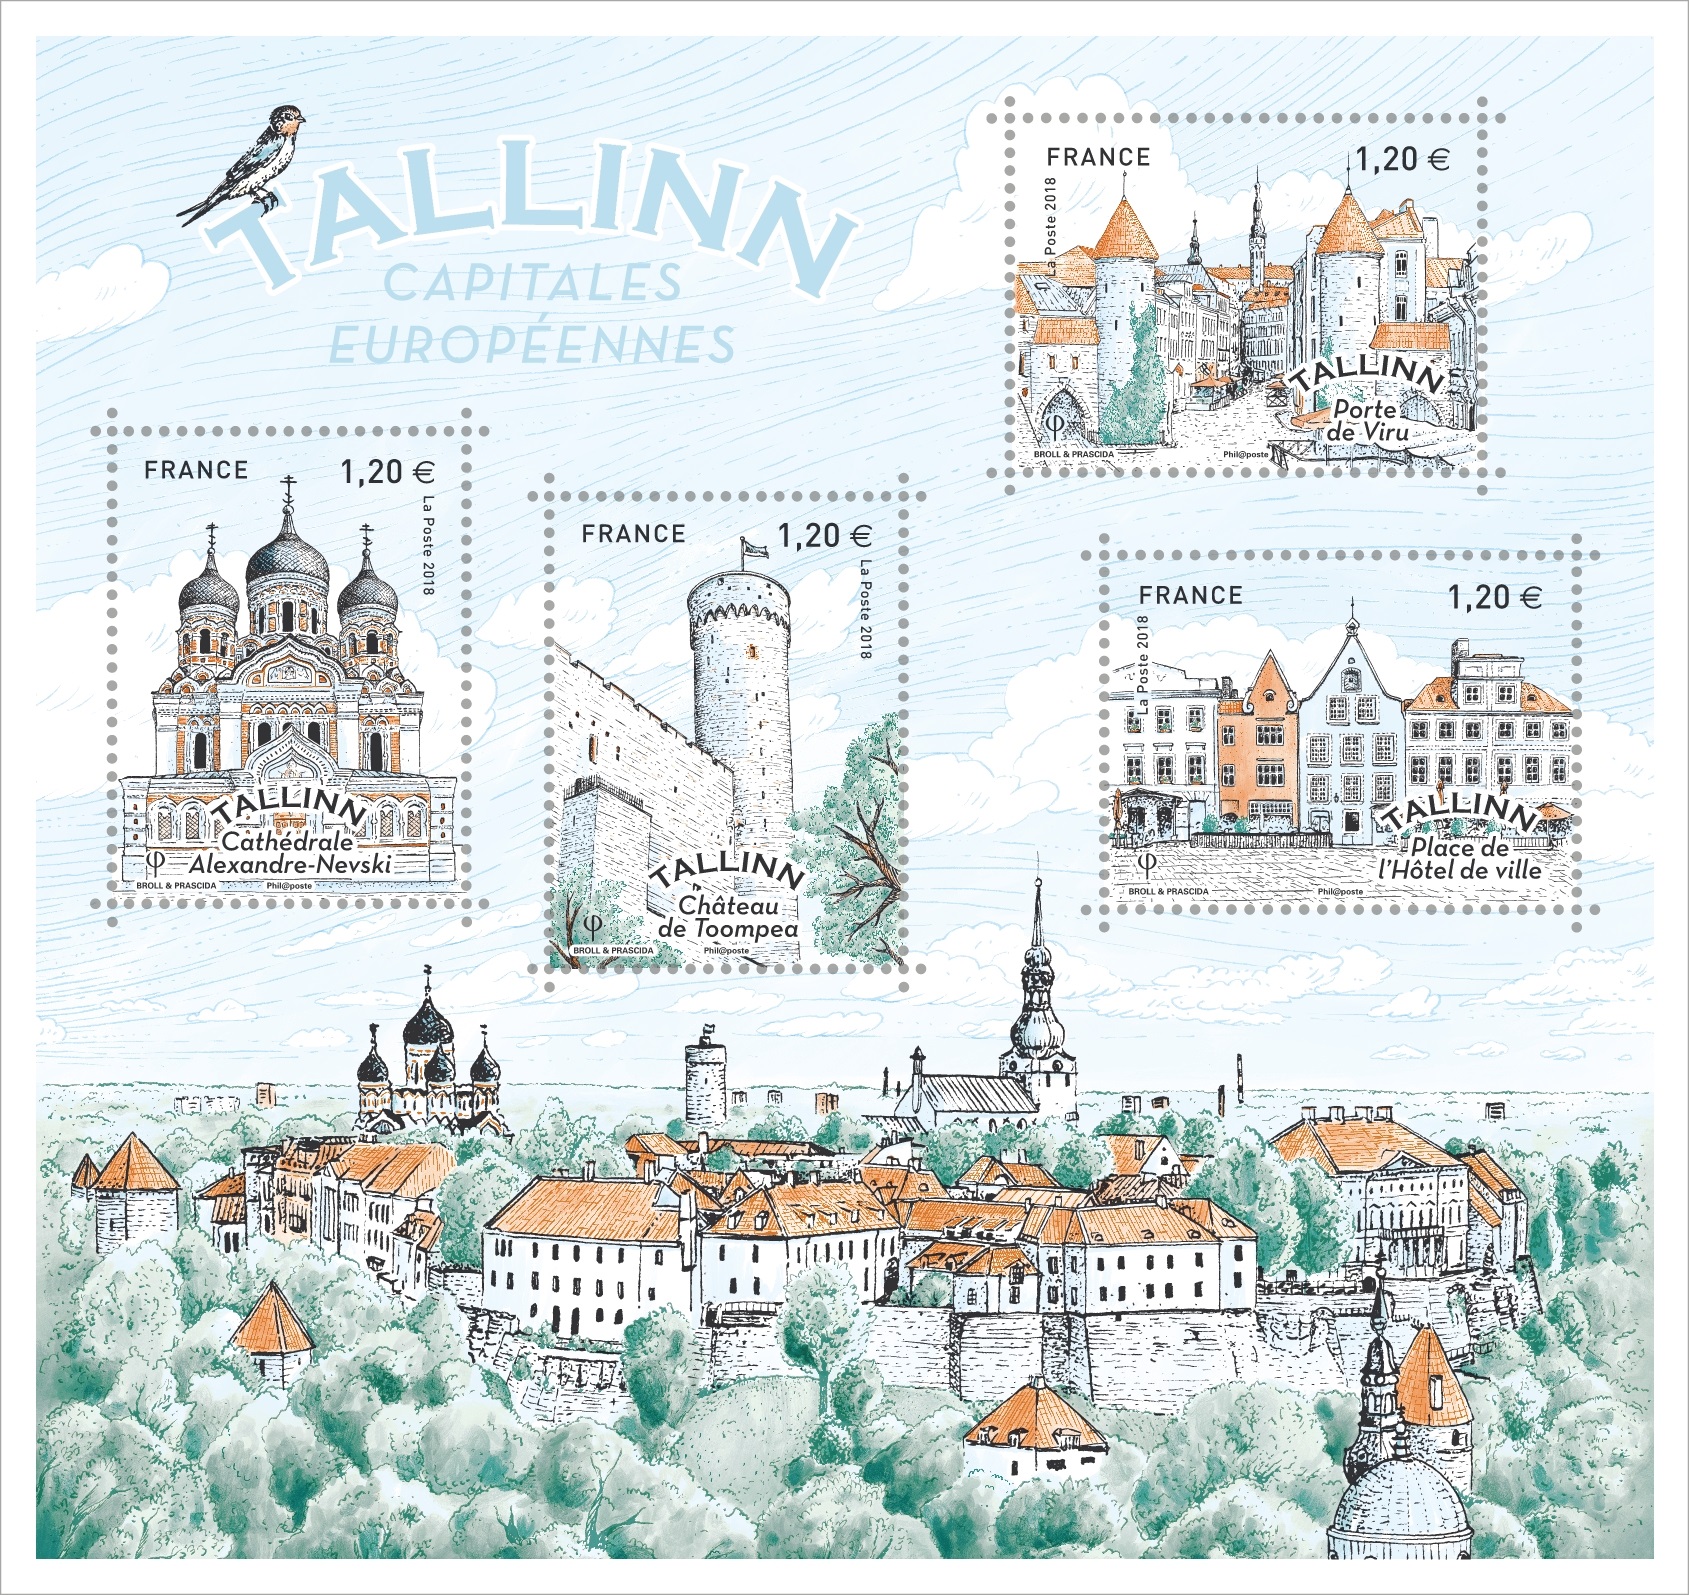 TALLINN - Capitales Européennes